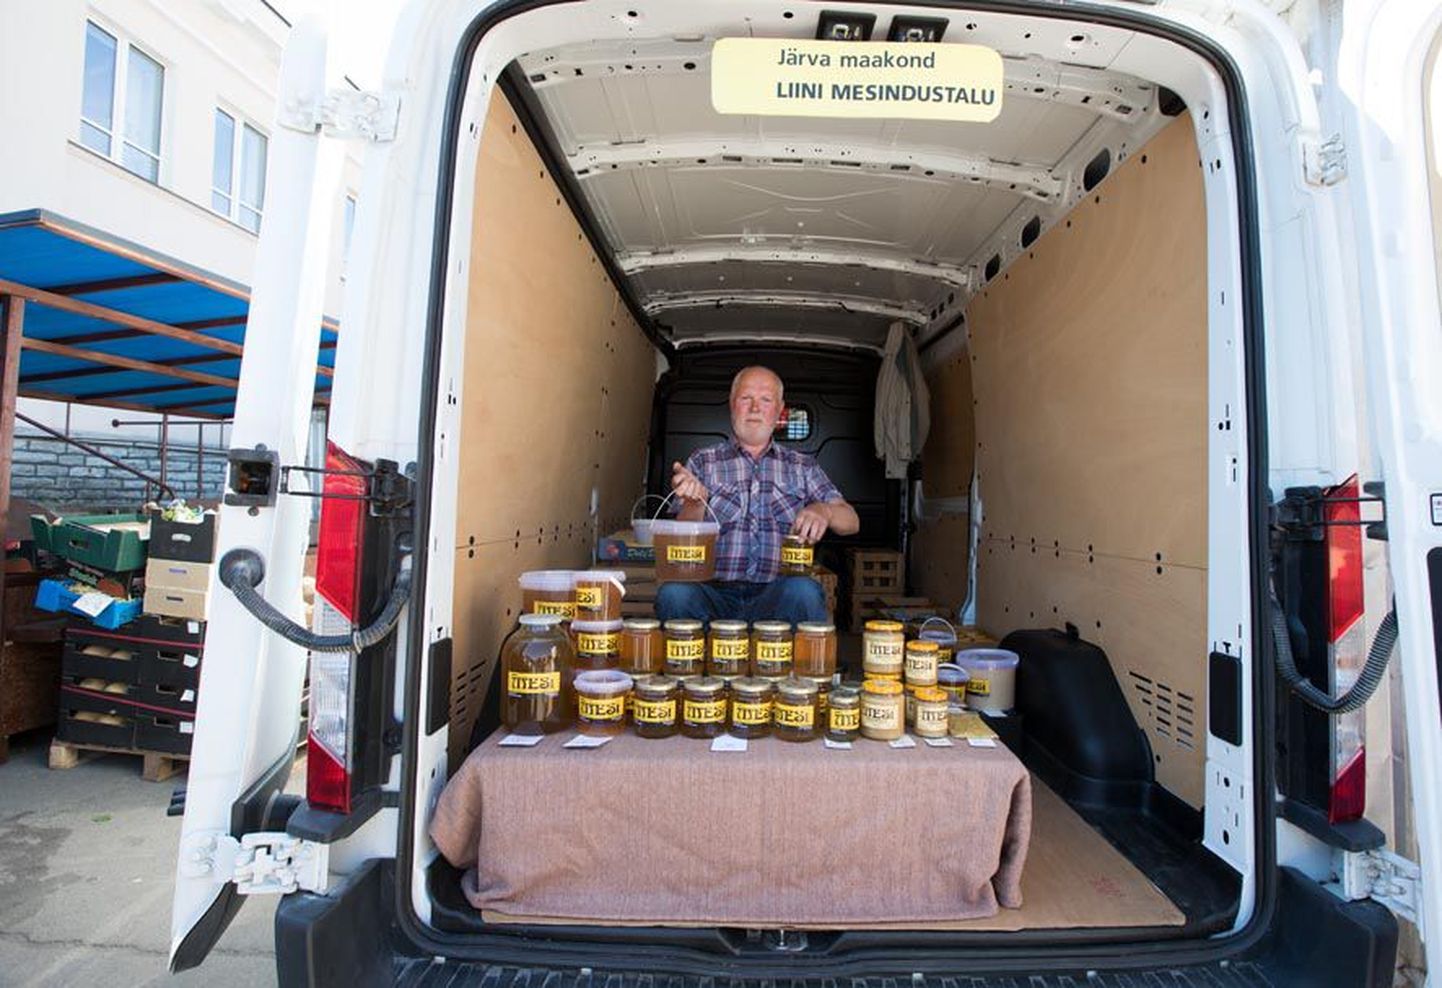 Koeru vallas aastaid mesindusega tegelenud Lembit Liin püüdis Tallinnas turul pakkuda värske mee kõrval ka vanemat mett. Kuigi selle hind oli odavam, eelistasid ostjad vaid värsket.